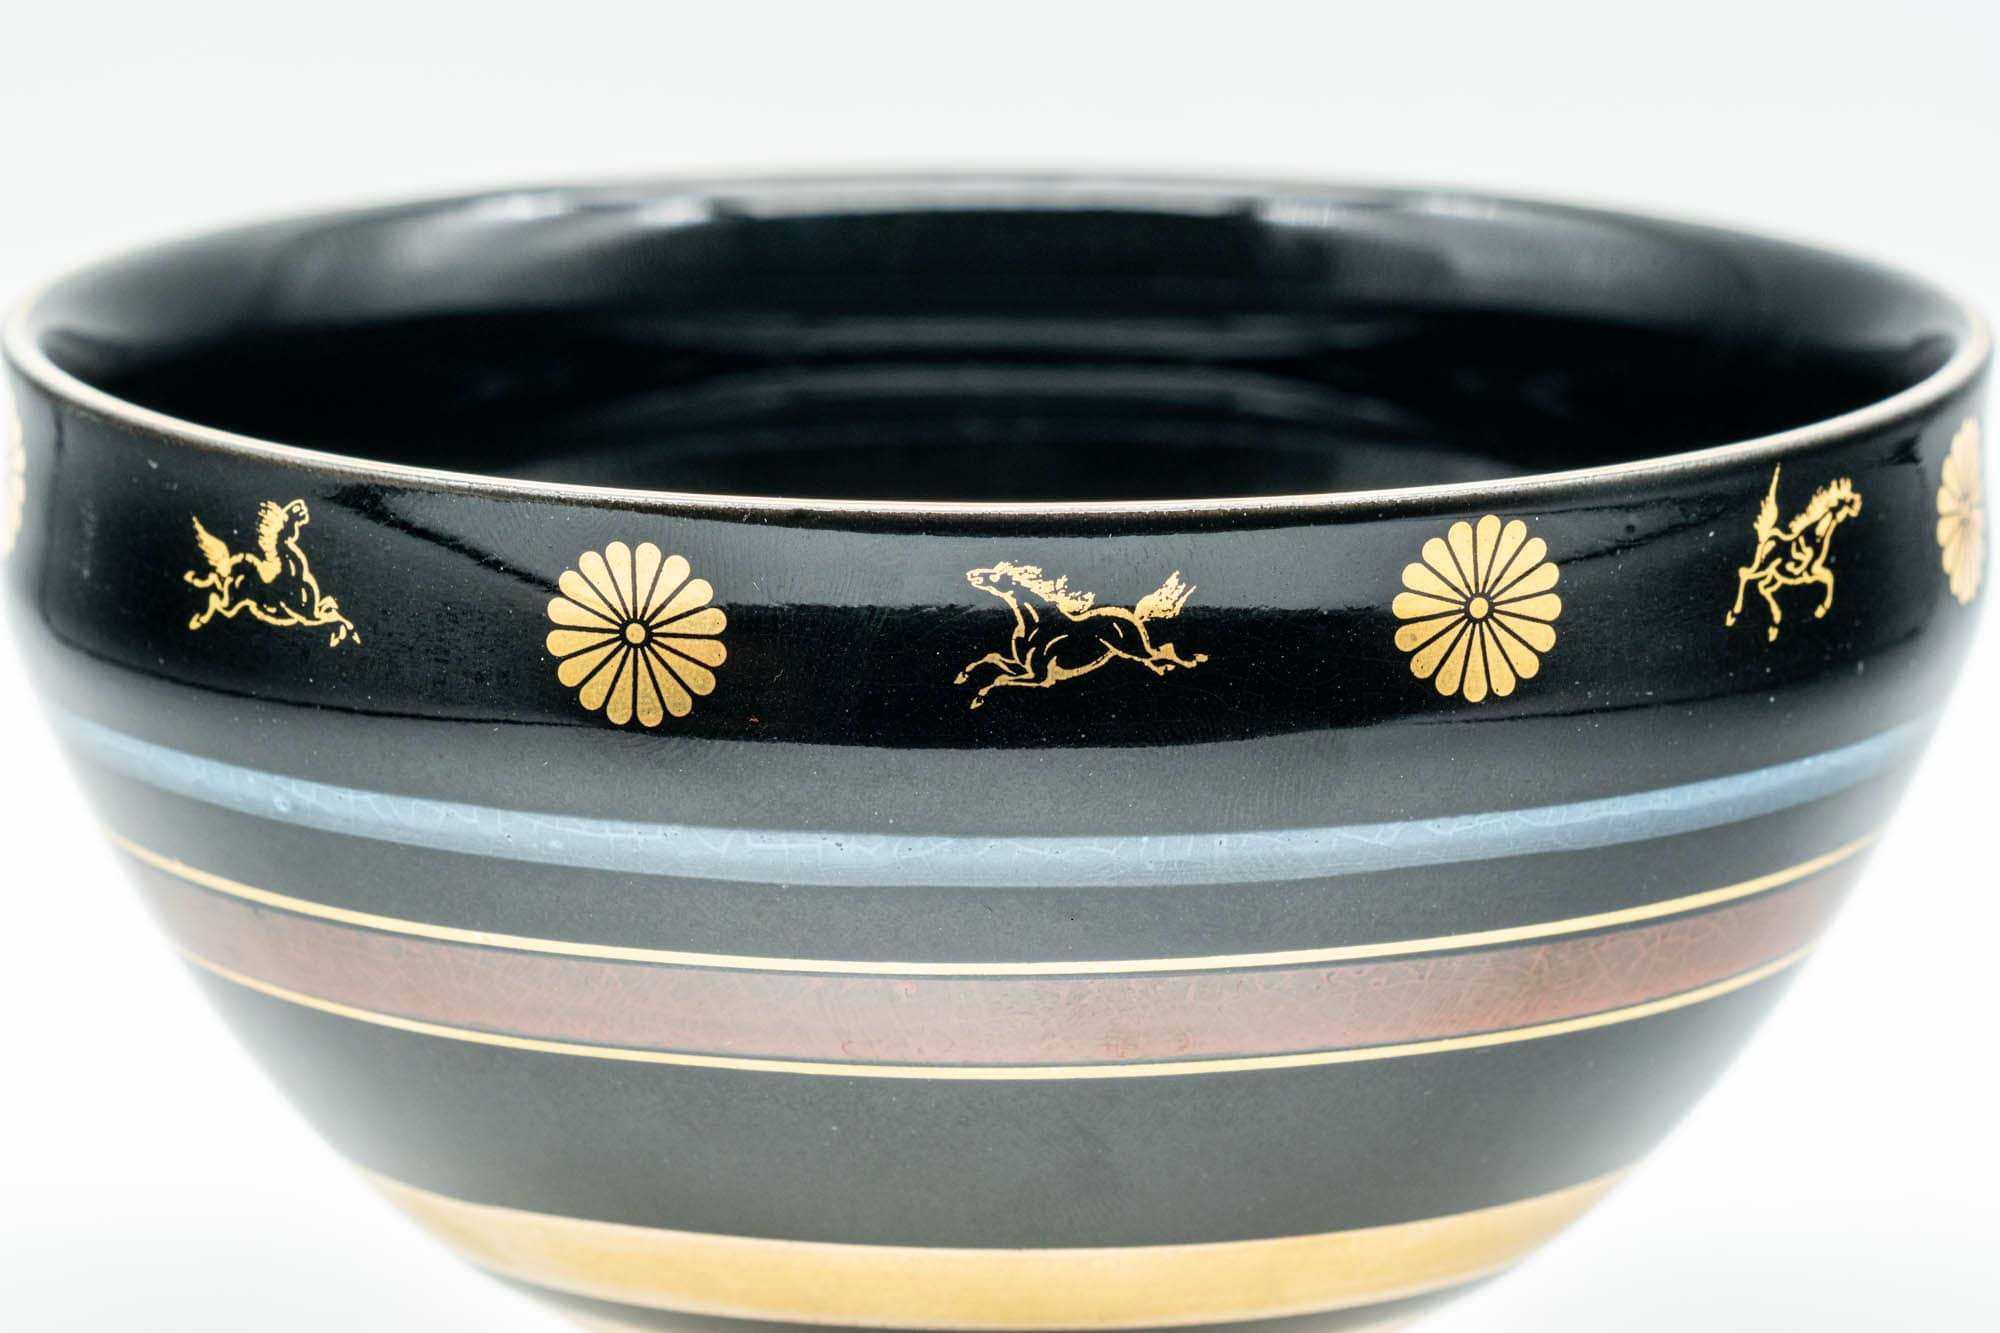 Japanese Matcha Bowl - 貴山 Kiyama - Black Gold Chrysanthemum Horses Kyo-yaki Chawan - 200ml